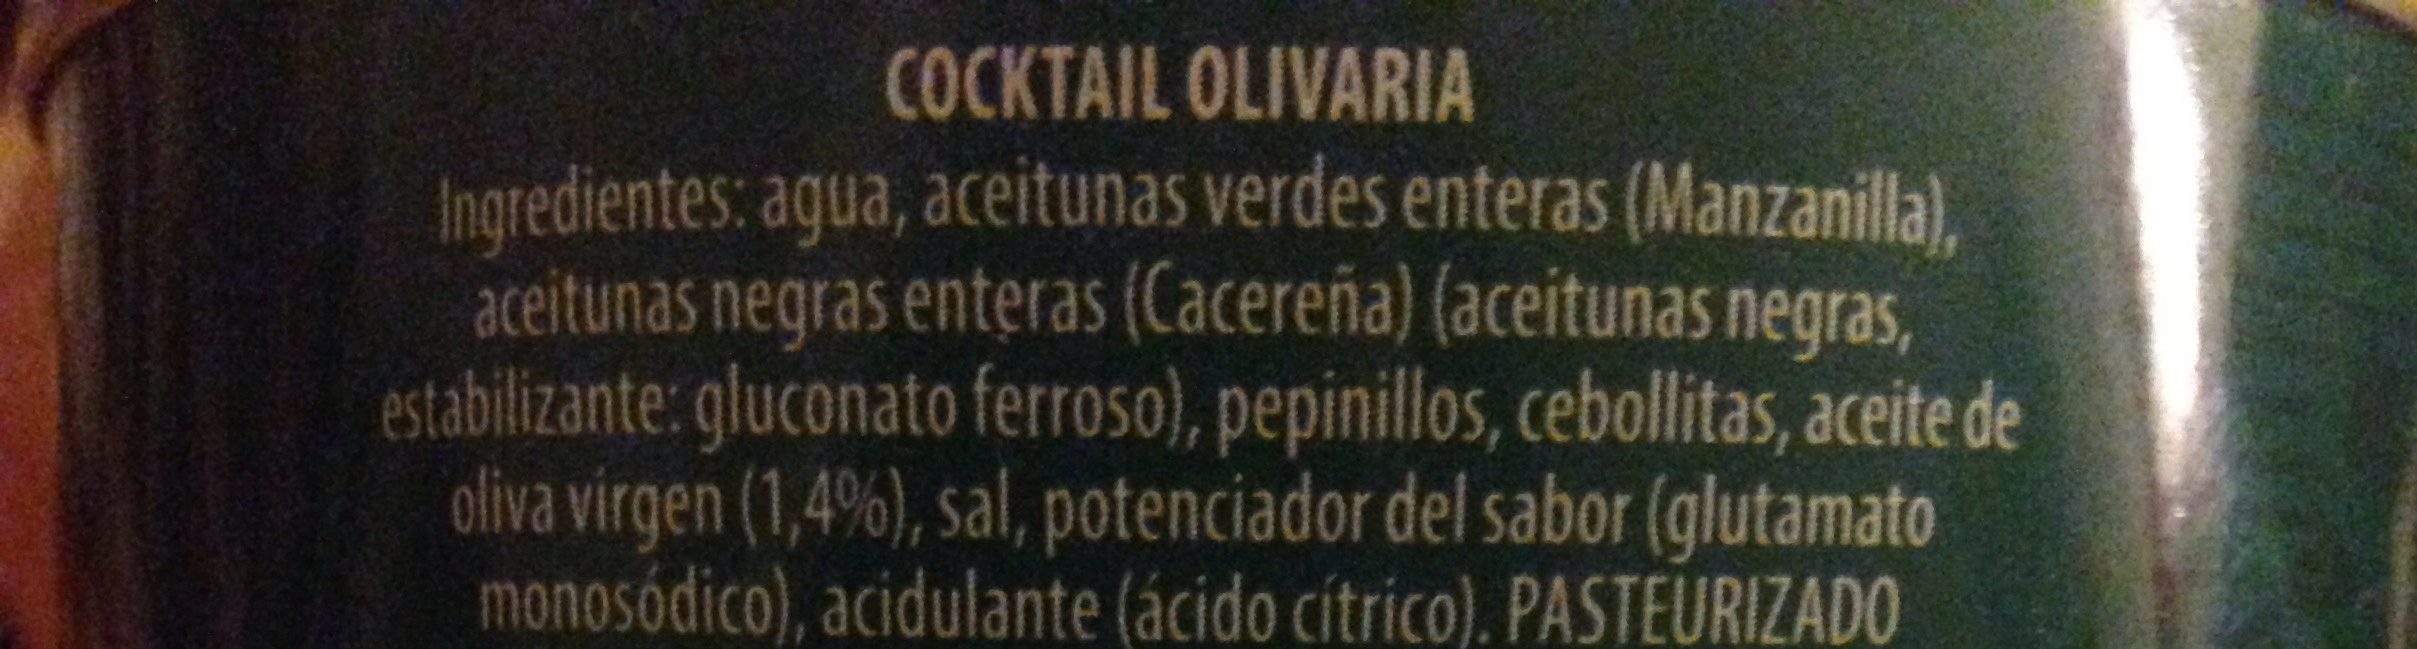 DeTapas Olivaria cocktel de encurtidos lata 1,5 kg - Ingrédients - es